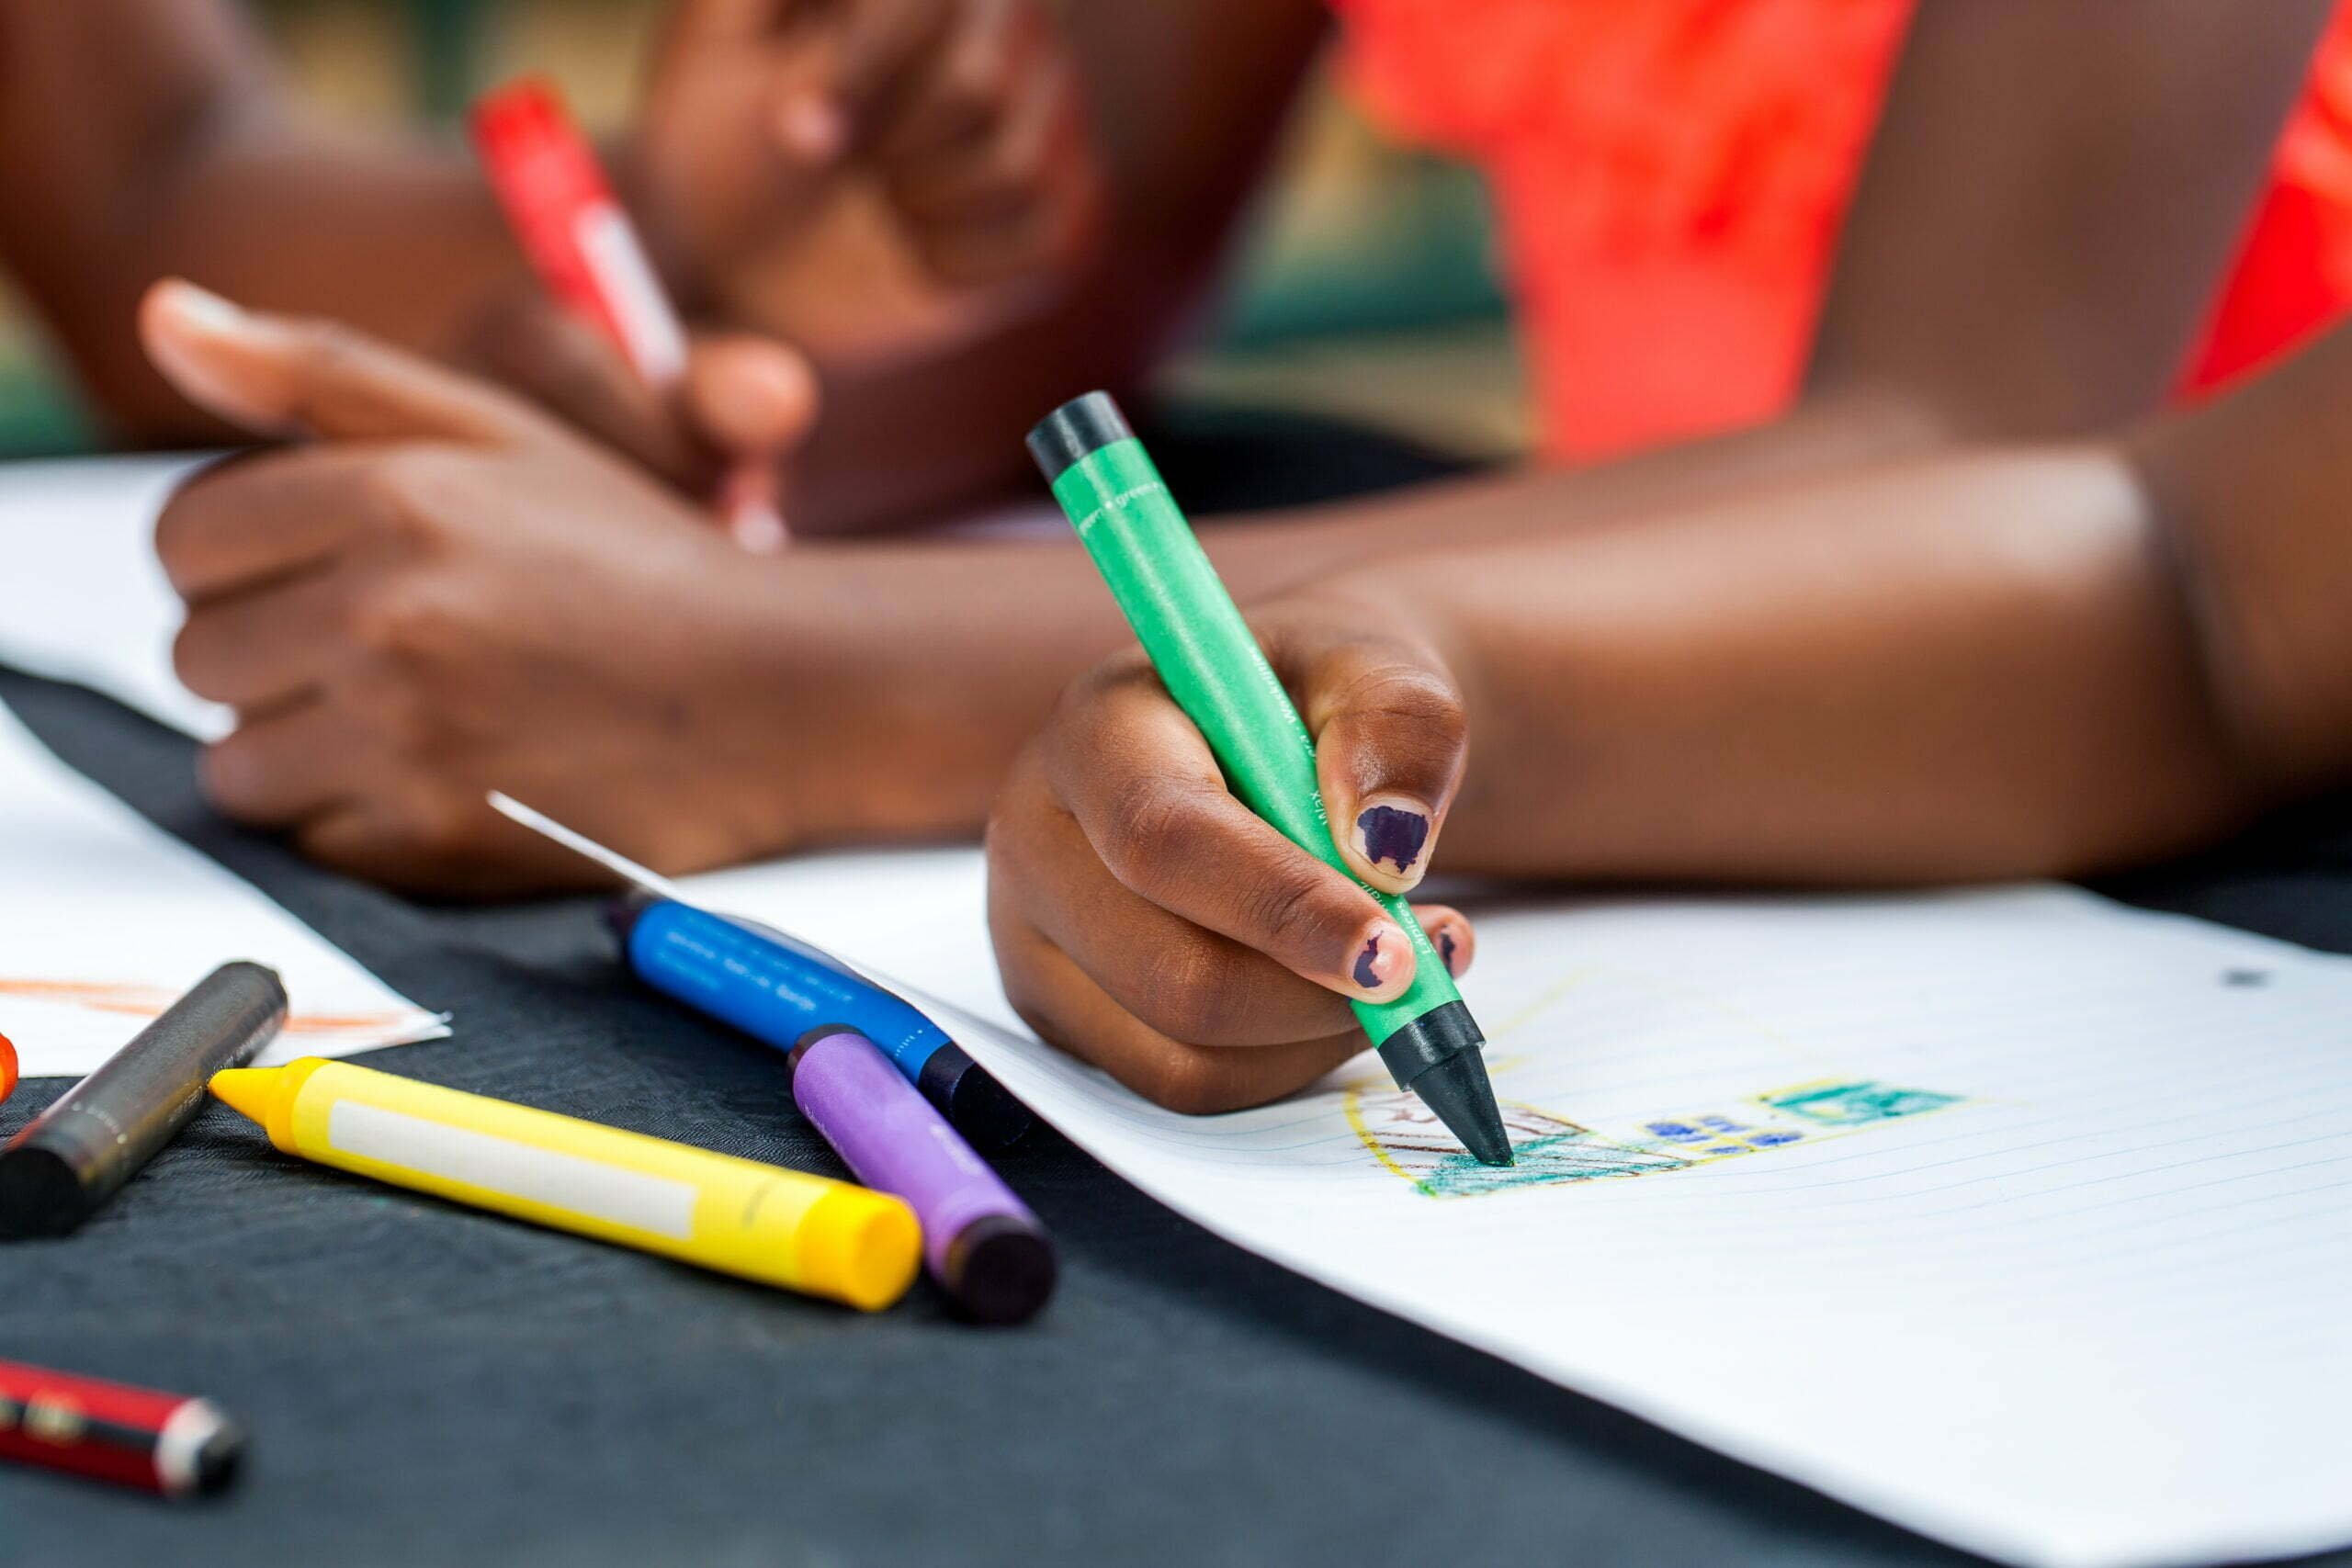 Ensino domiciliar: foto mostra o detalhe das mãos de duas crianças negras desenhando em uma mesa